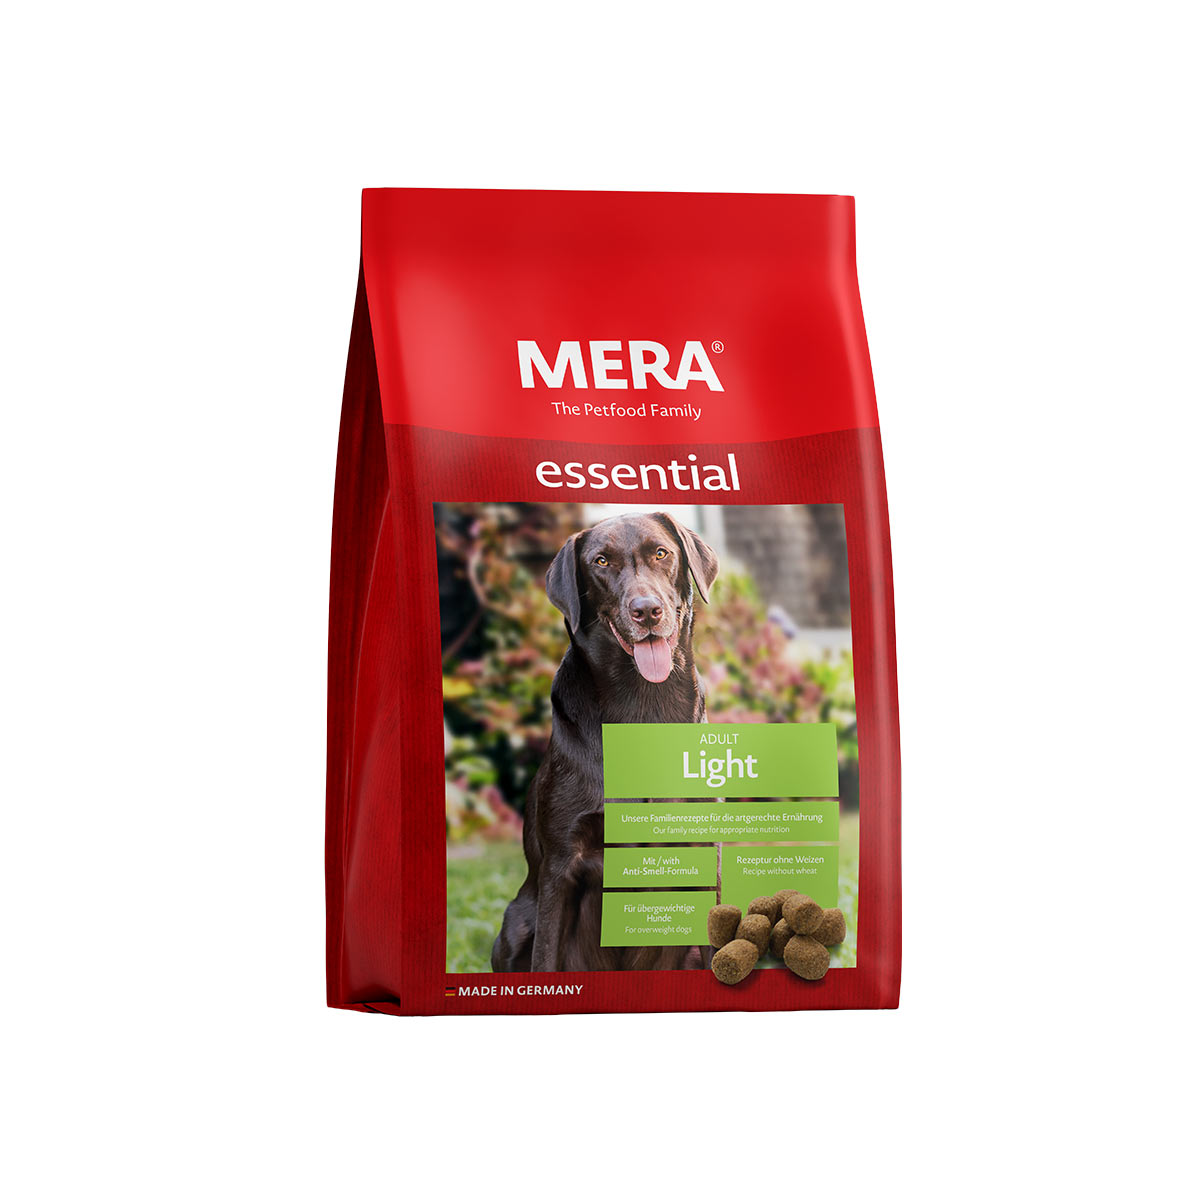 MERA essential Trockenfutter Light 2×12,5kg